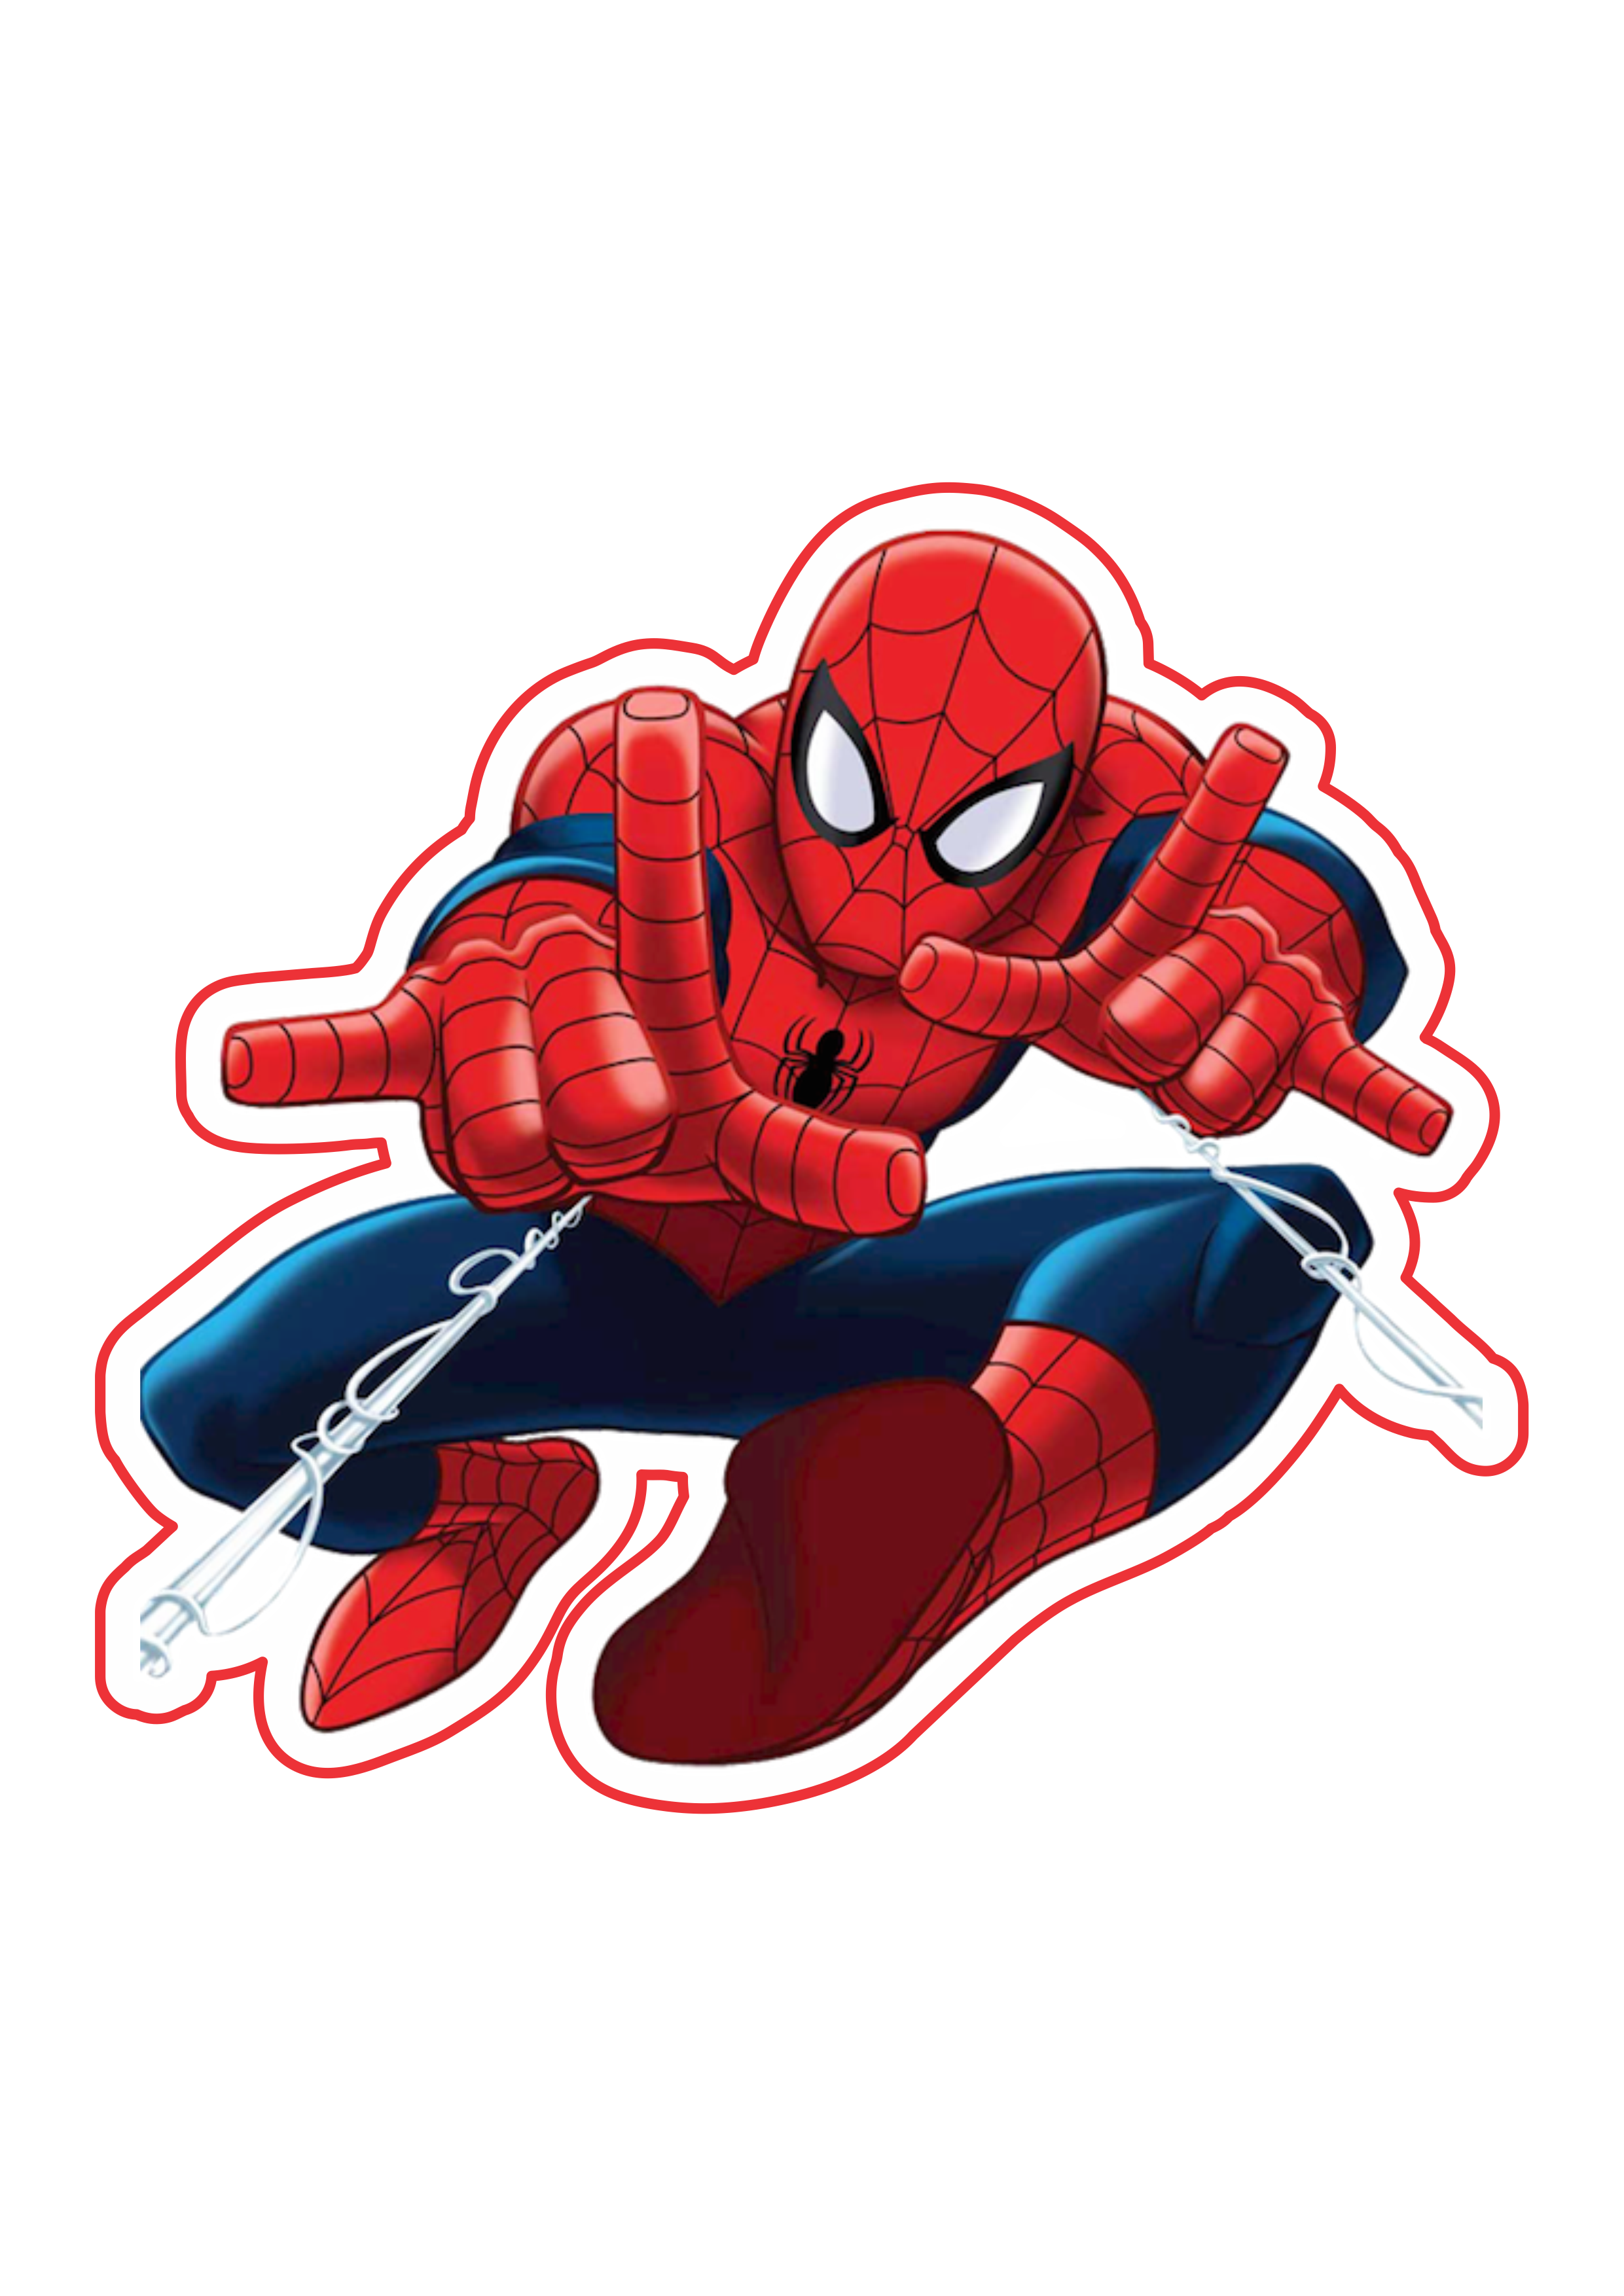 O espetacular homem aranha imagem fundo transparente Marvel super heróis arte conceitual png